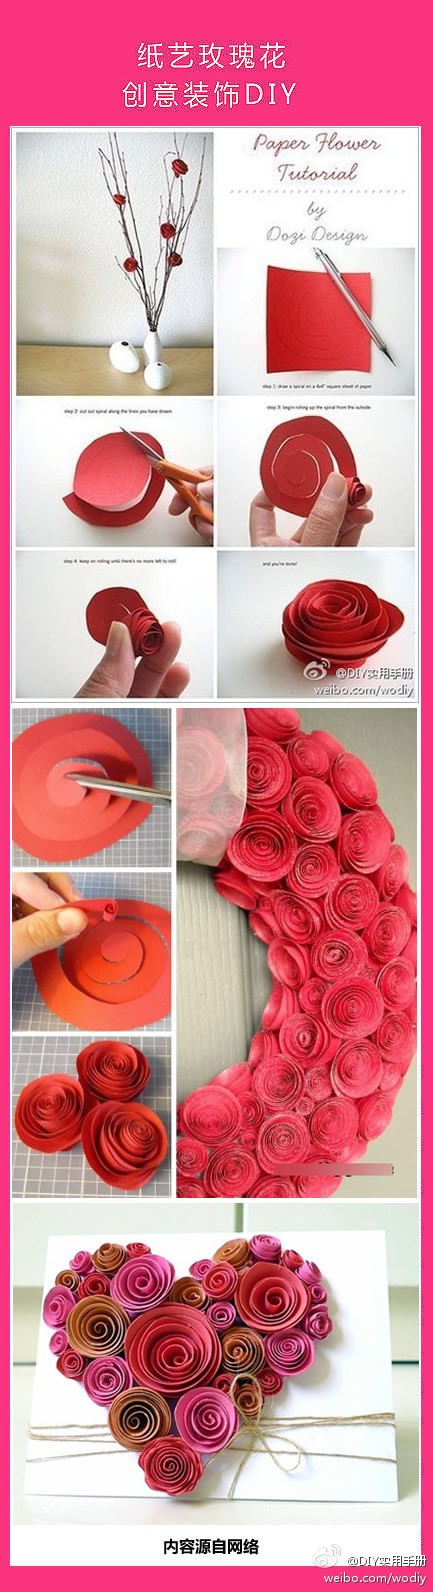 紙藝玫瑰創意DIY的